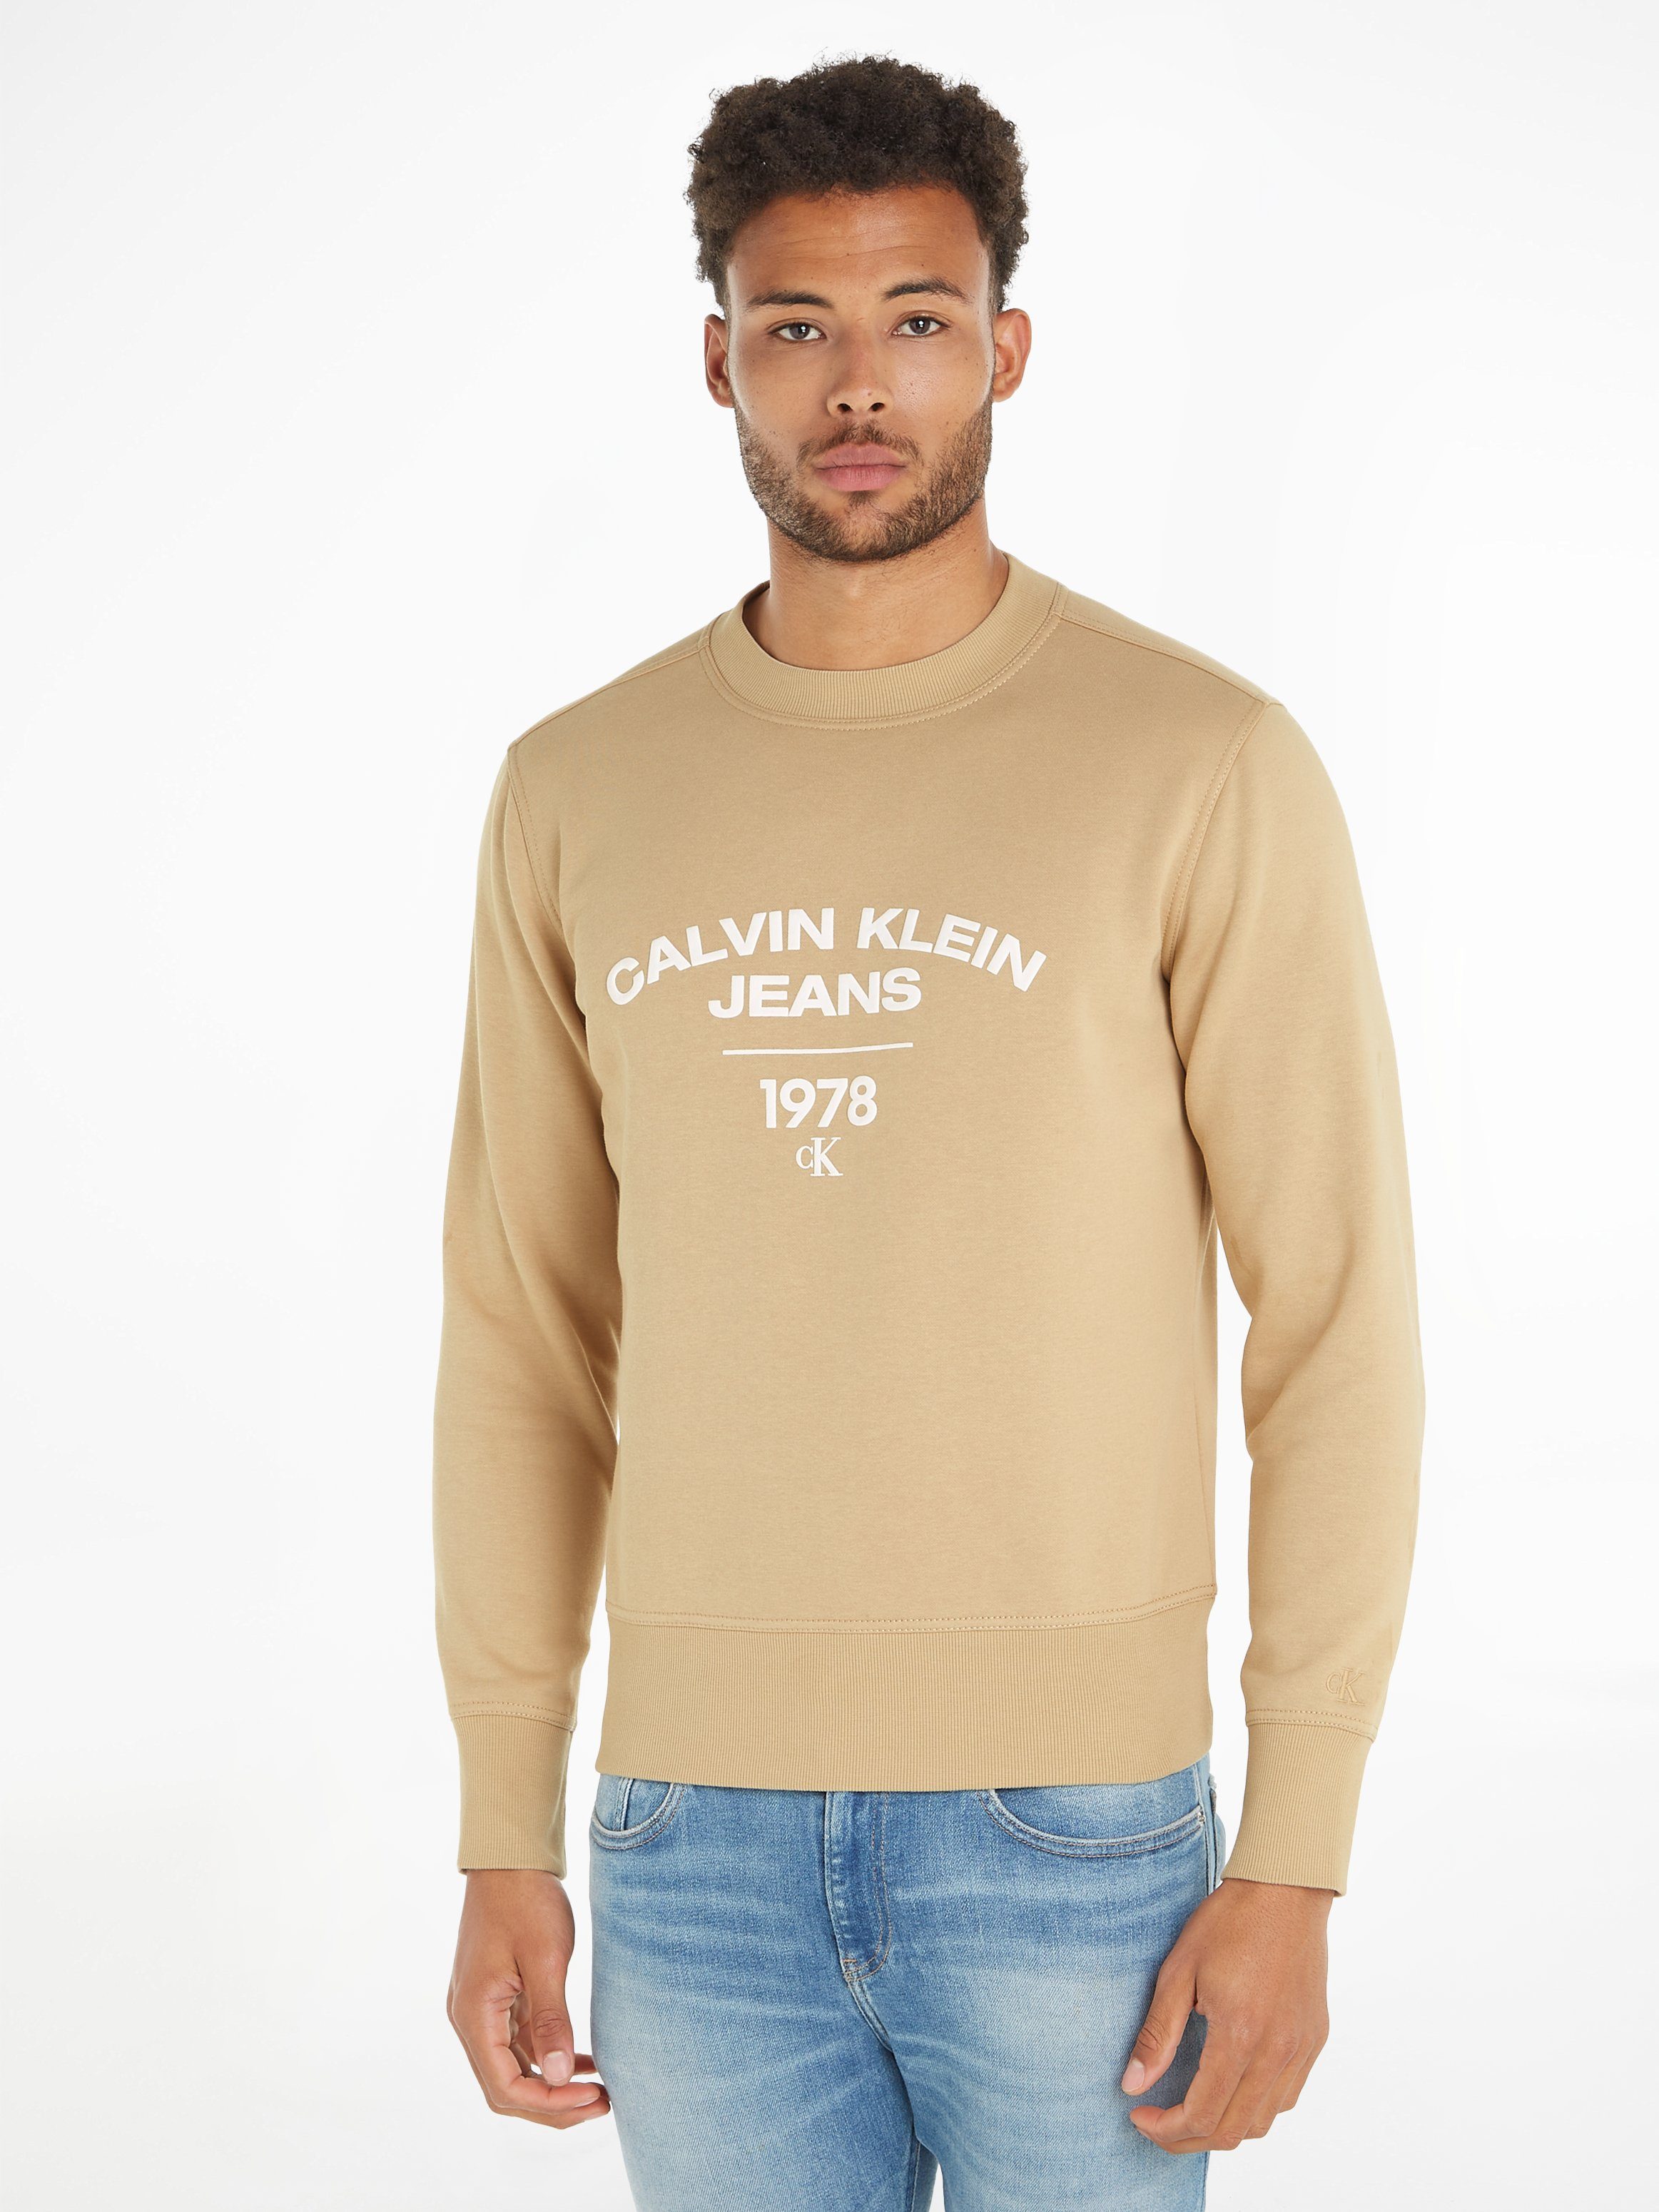 CURVE Sweatshirt Klein CREW Calvin Jeans NECK Travertine VARSITY